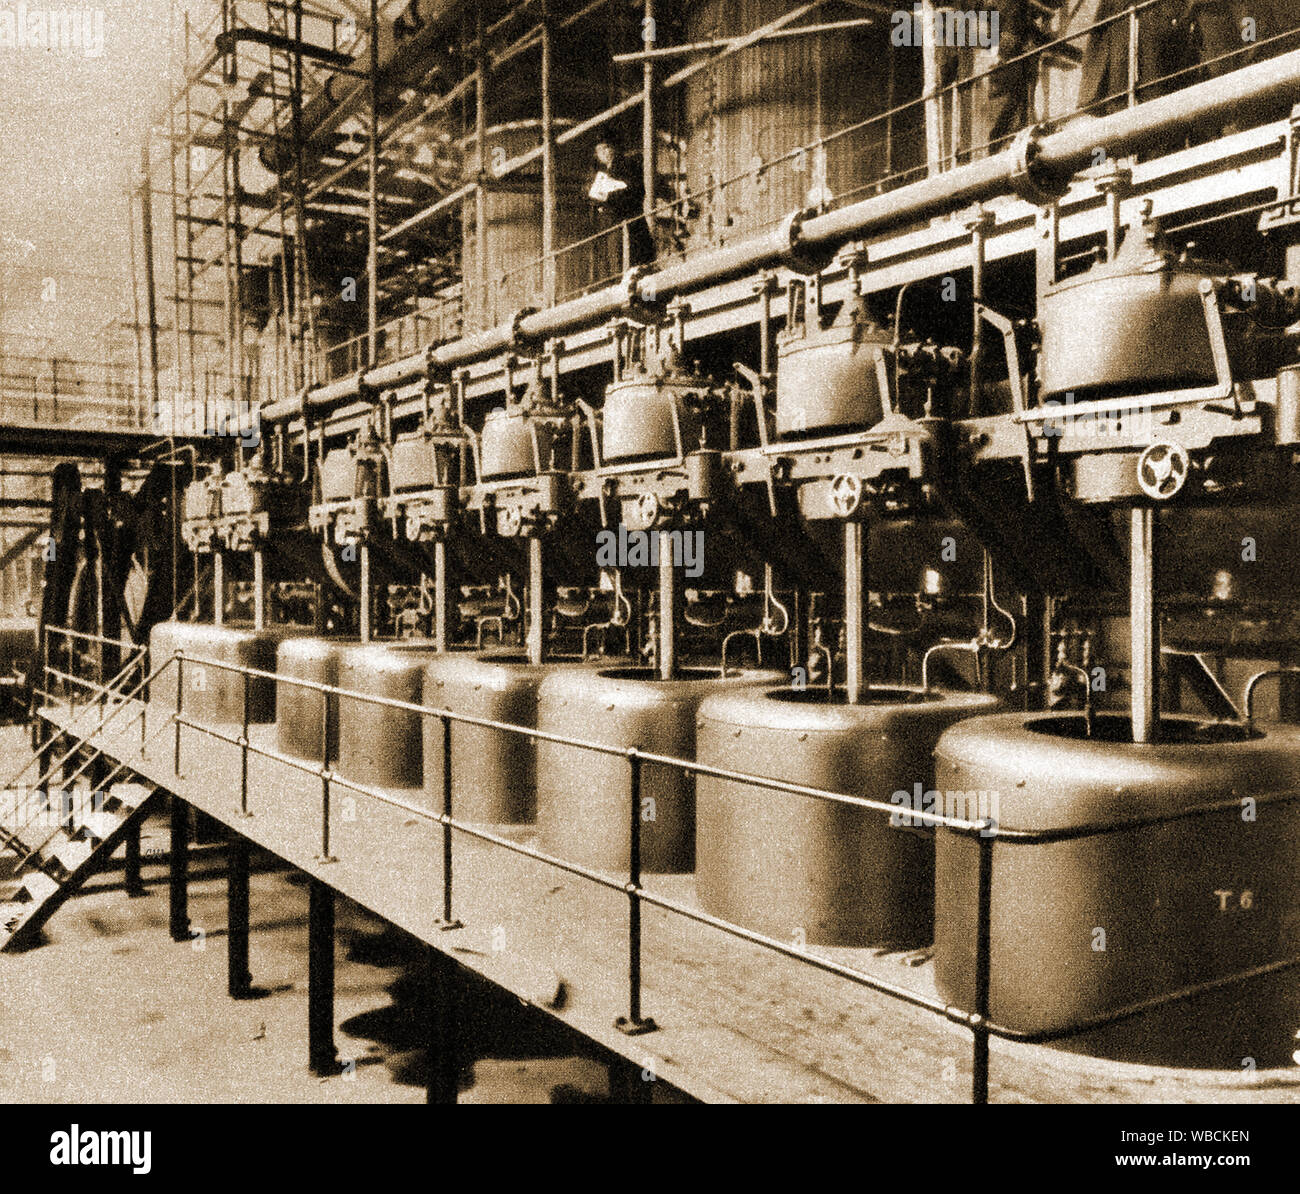 L'inglese di barbabietole da zucchero industria - 1920's premere picture di zucchero turbine utilizzate per separare lo zucchero dal succo.La produzione su larga scala è iniziata dopo la prima guerra mondiale dopo la guerra-tempo di penuria di zucchero di canna importato. Nel 1920 vi erano circa 20 stabilimenti commerciali di trasformazione dello zucchero di barbabietola. Foto Stock